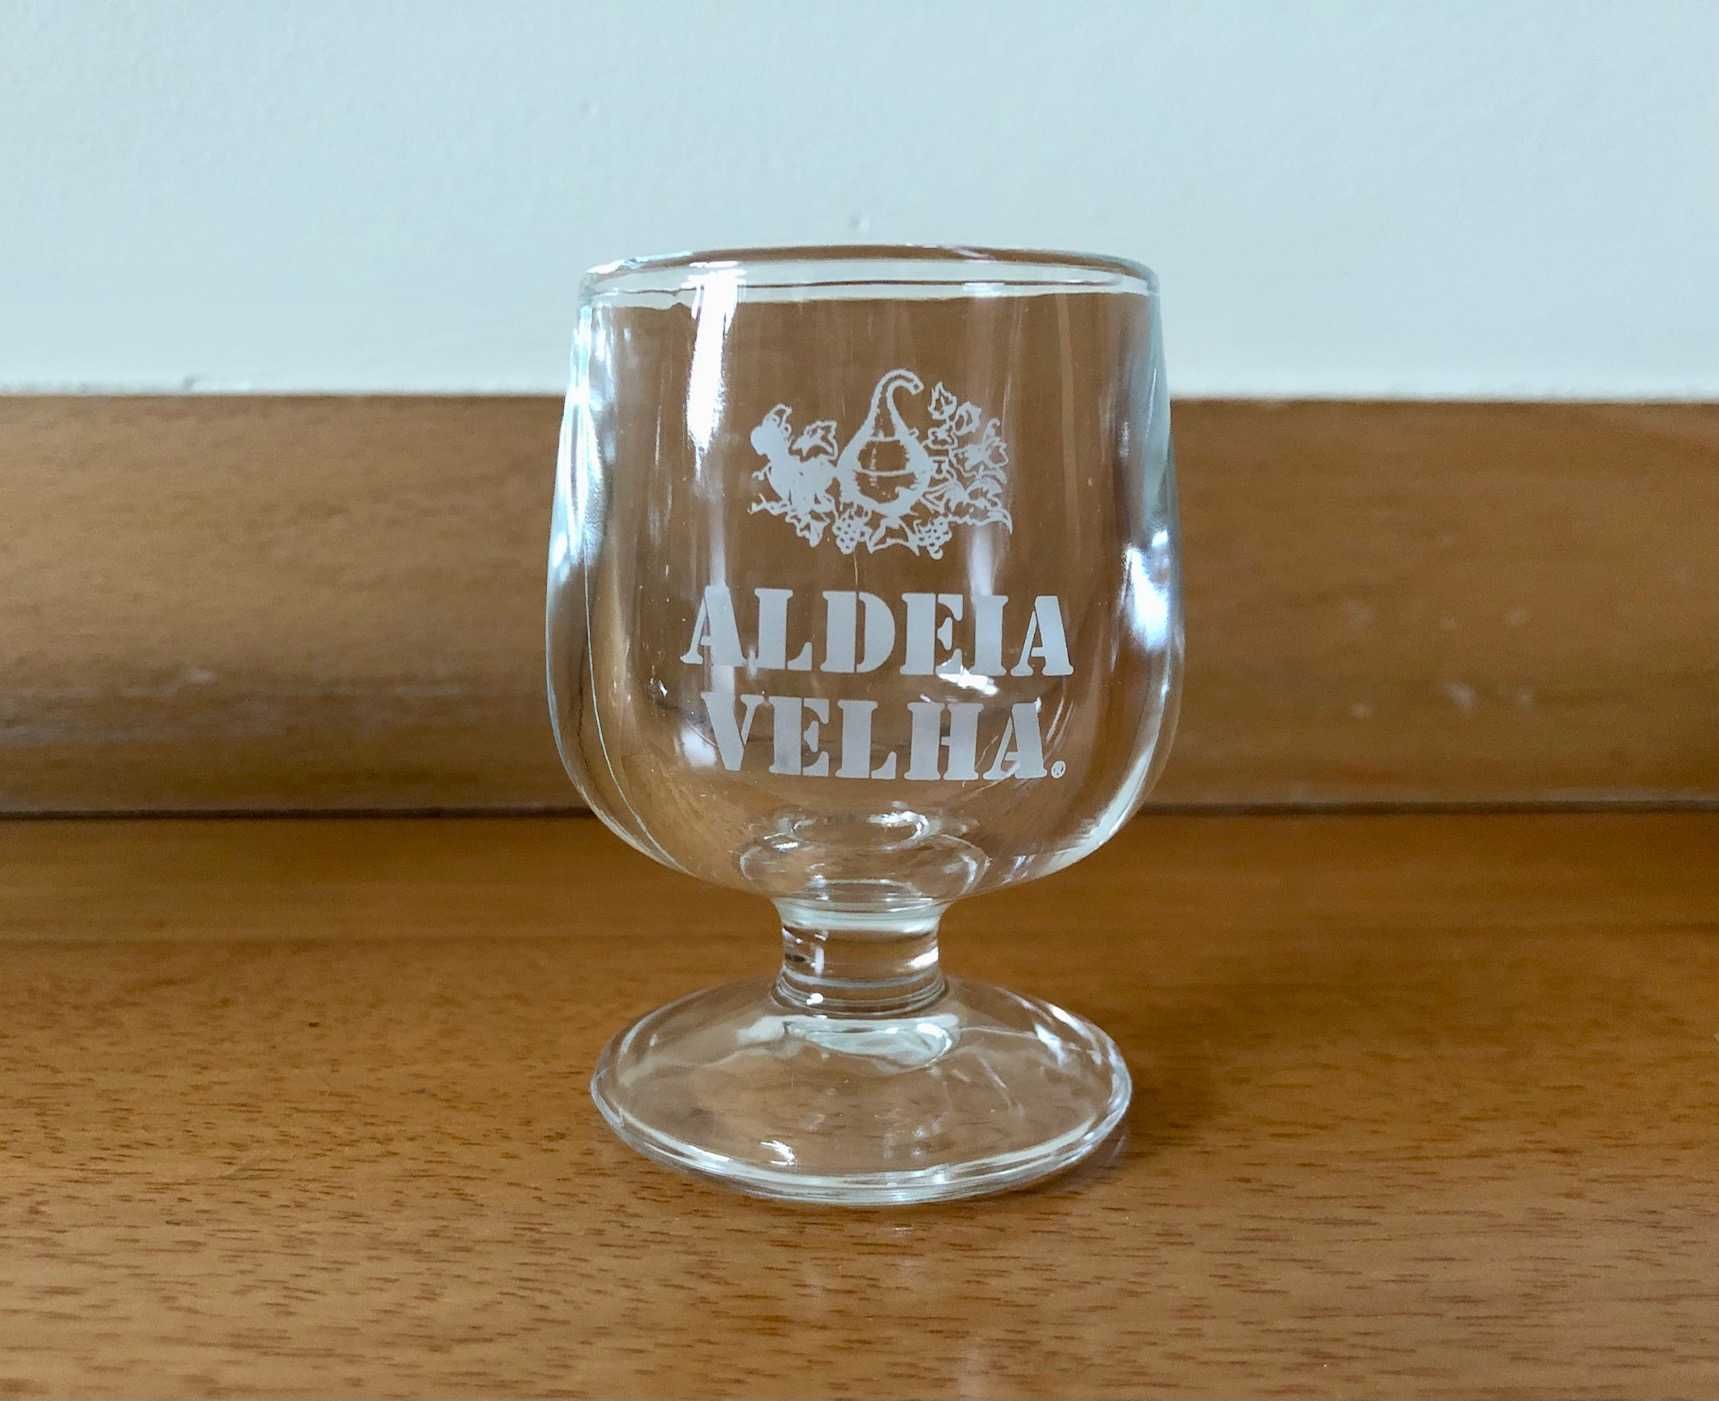 Cálices / copos de shot de aguardente da Aldeia Velha para coleção